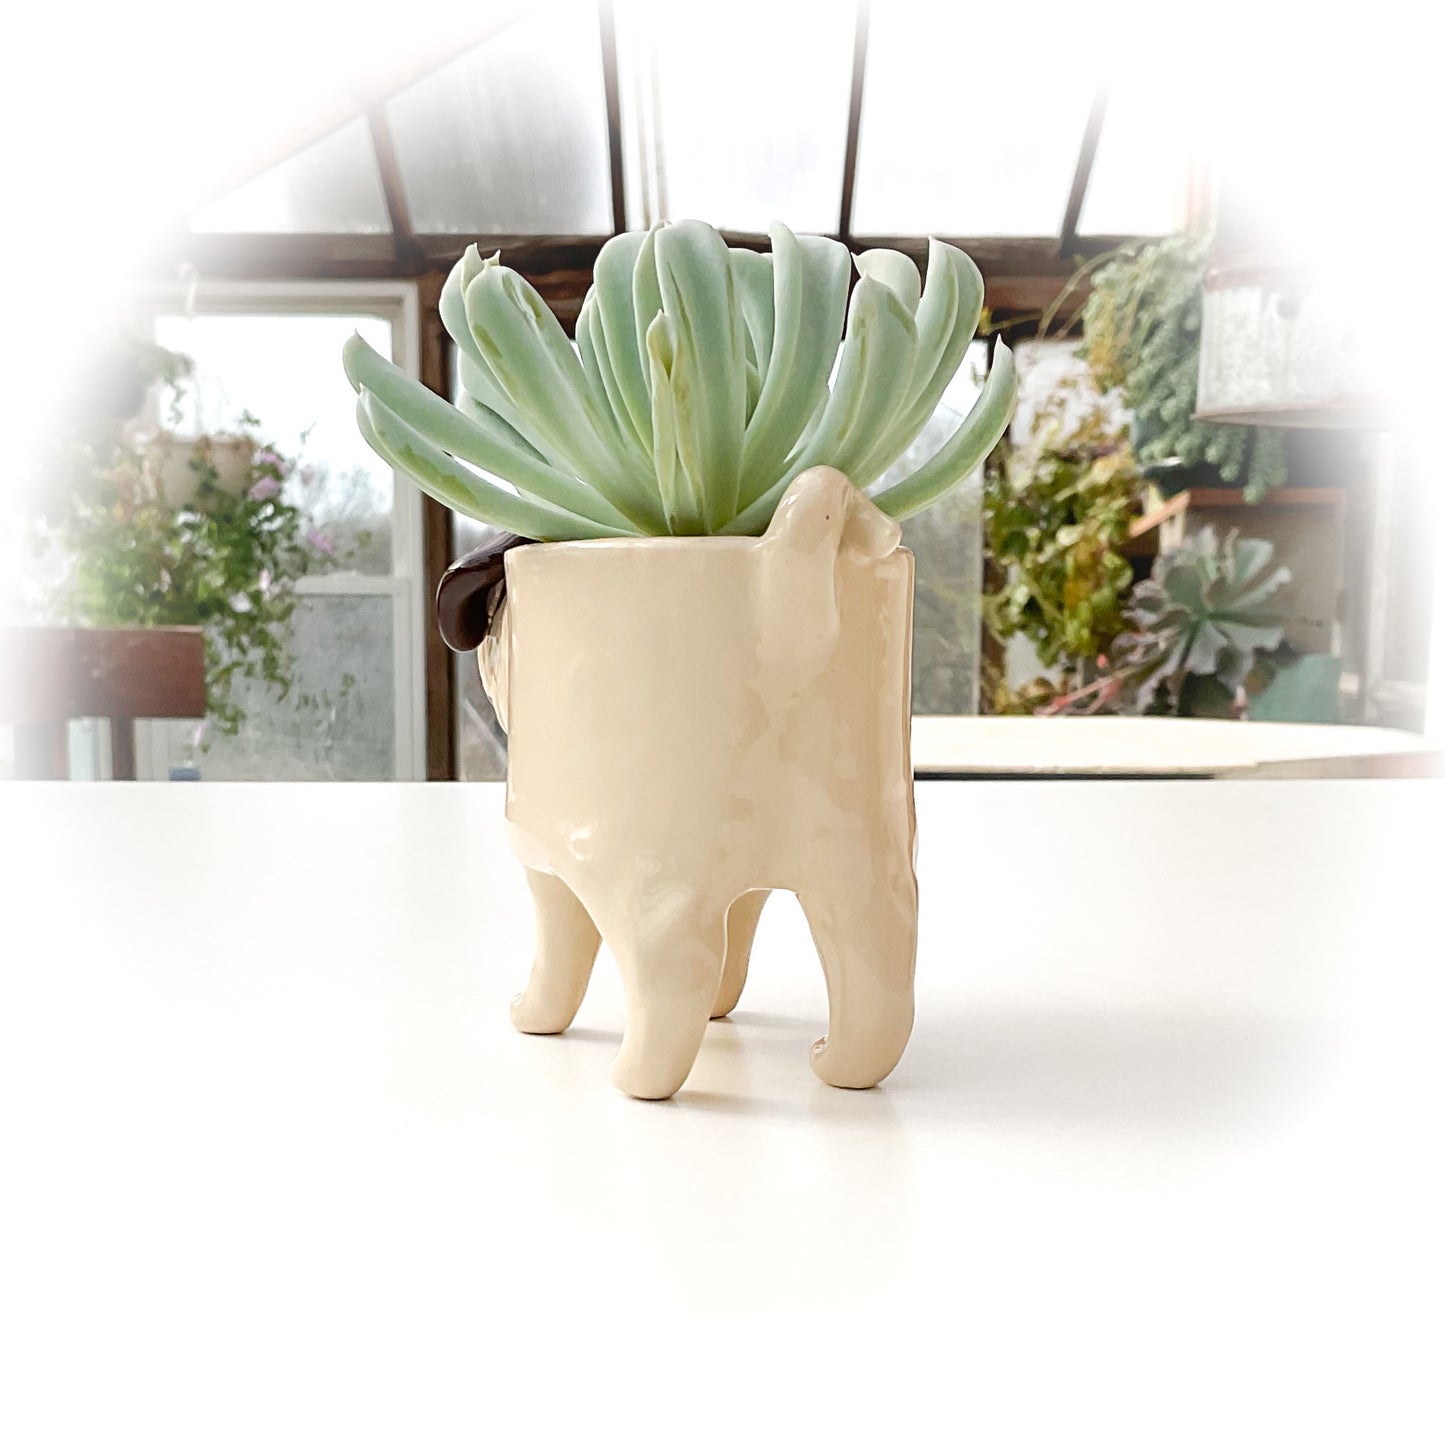 Pug Dog Planter - Ceramic Dog Plant Pot